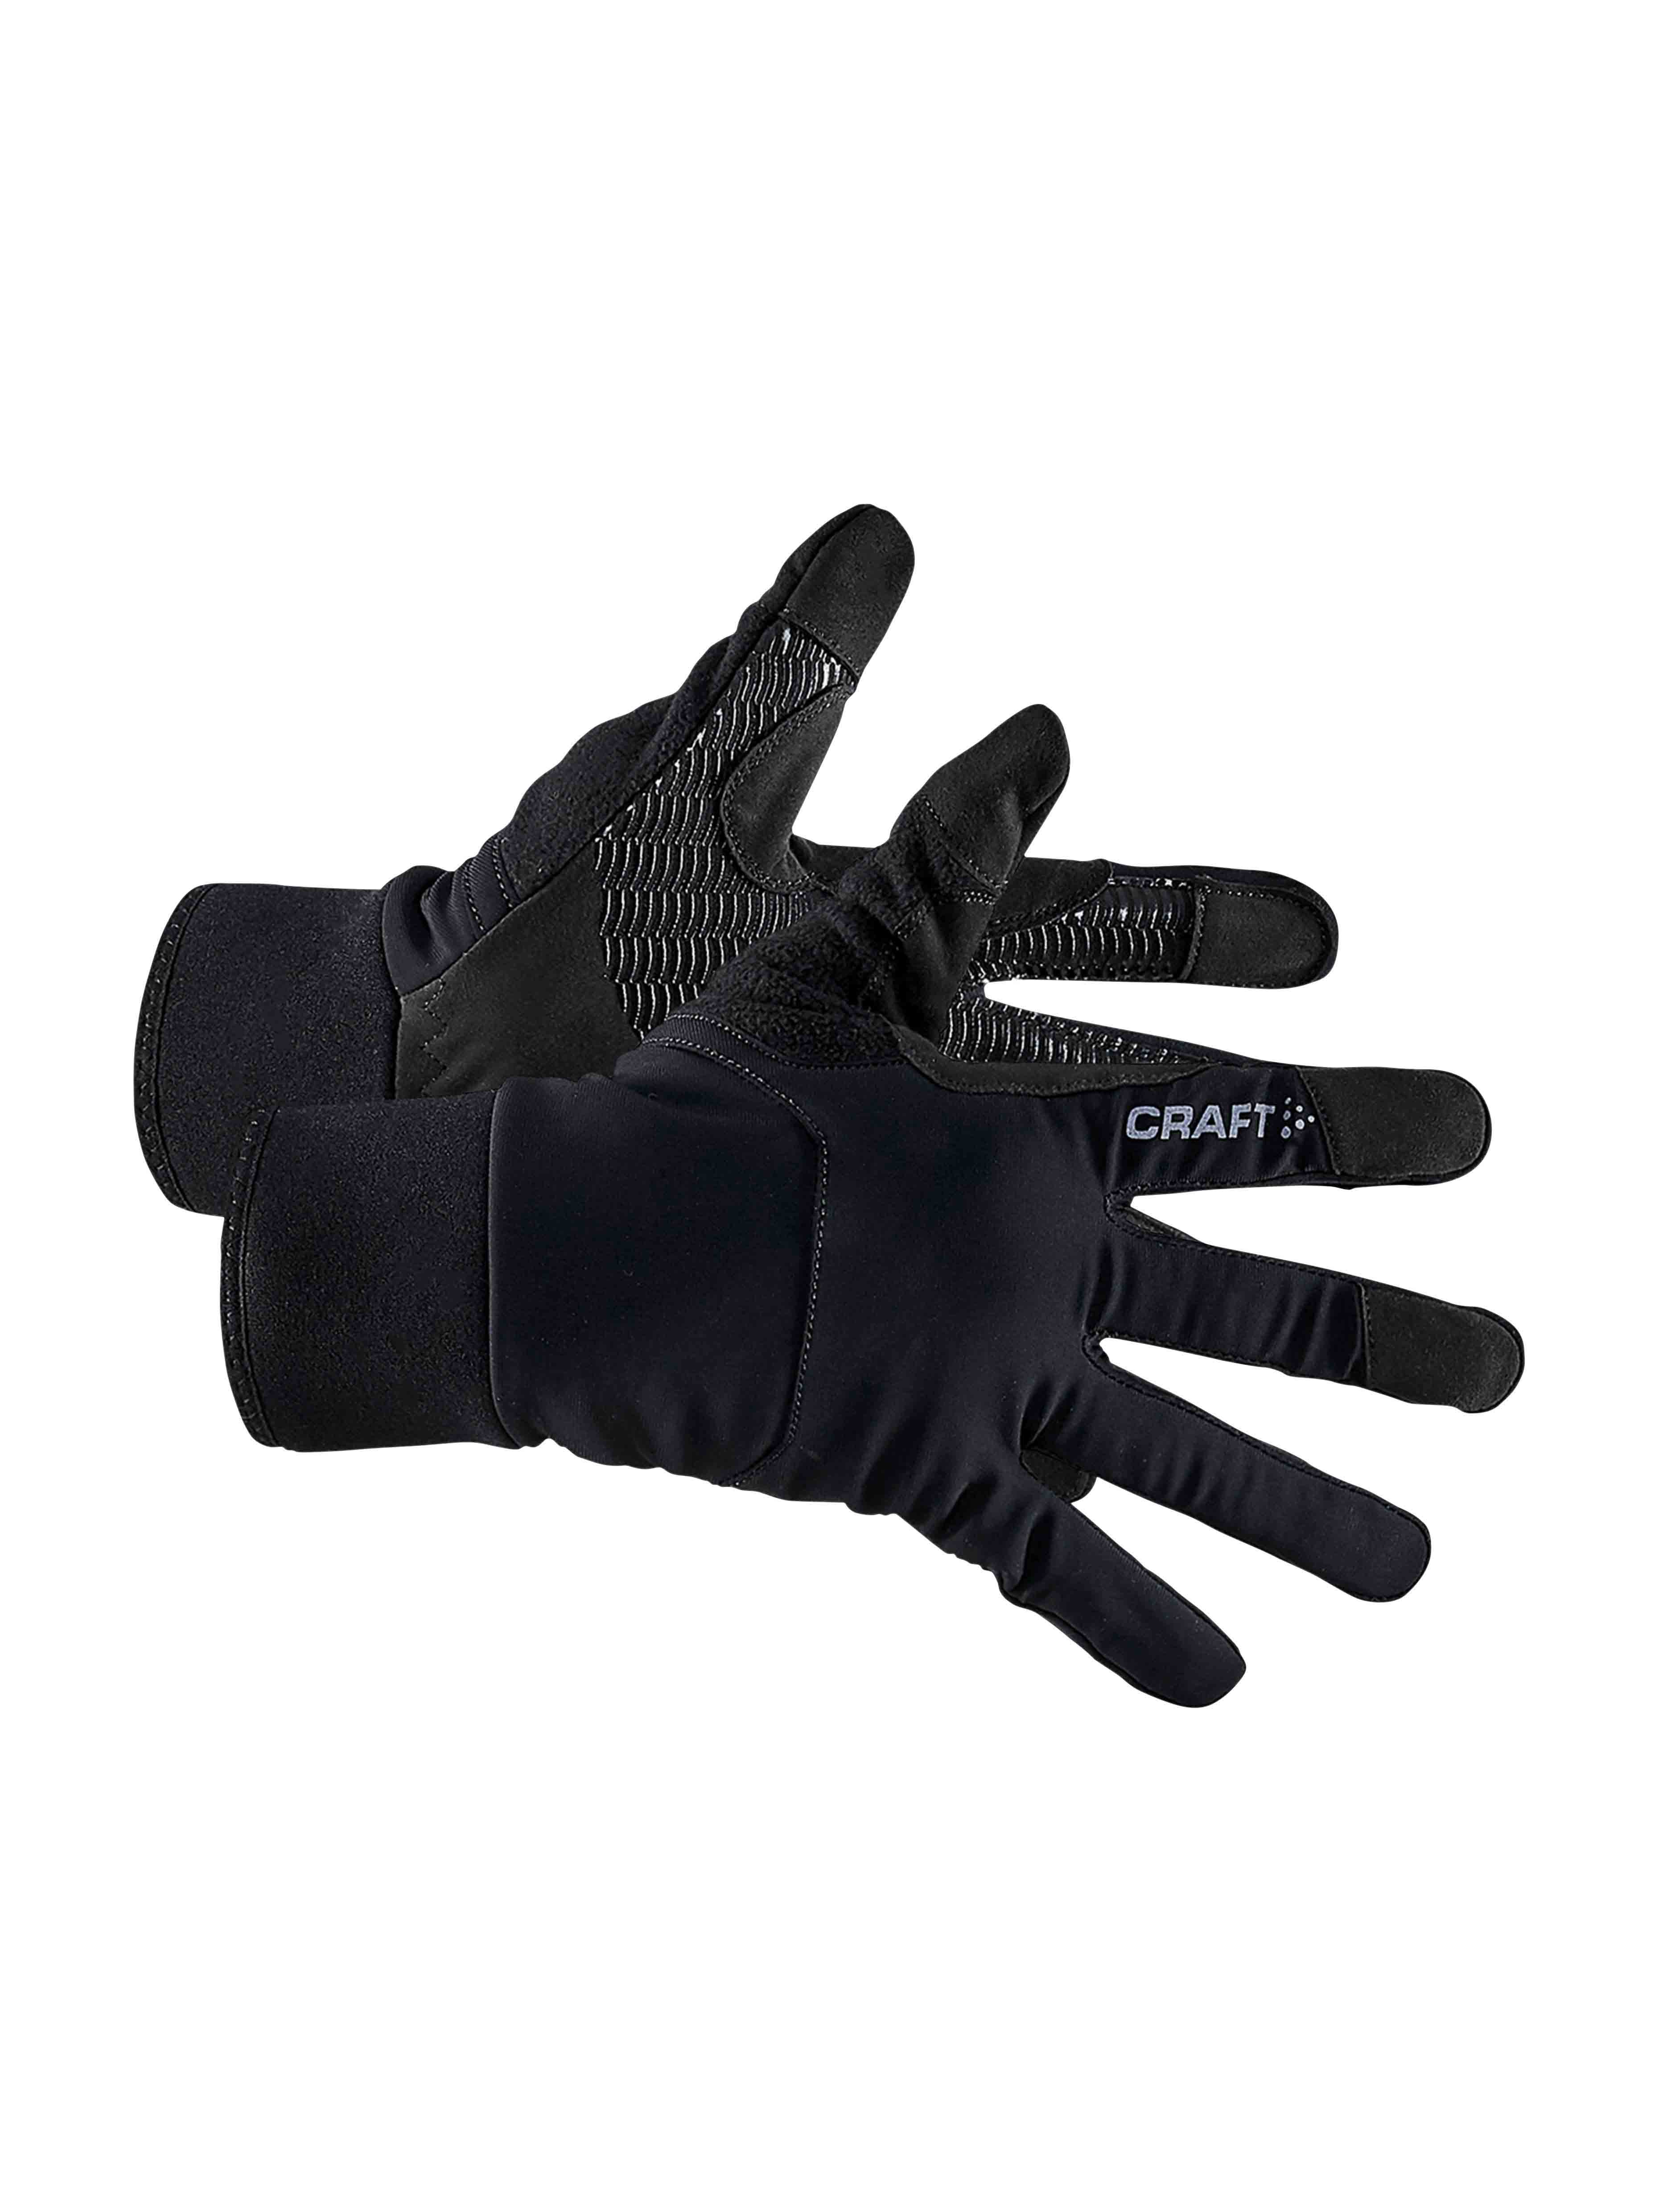 ADV Speed Glove BLACK